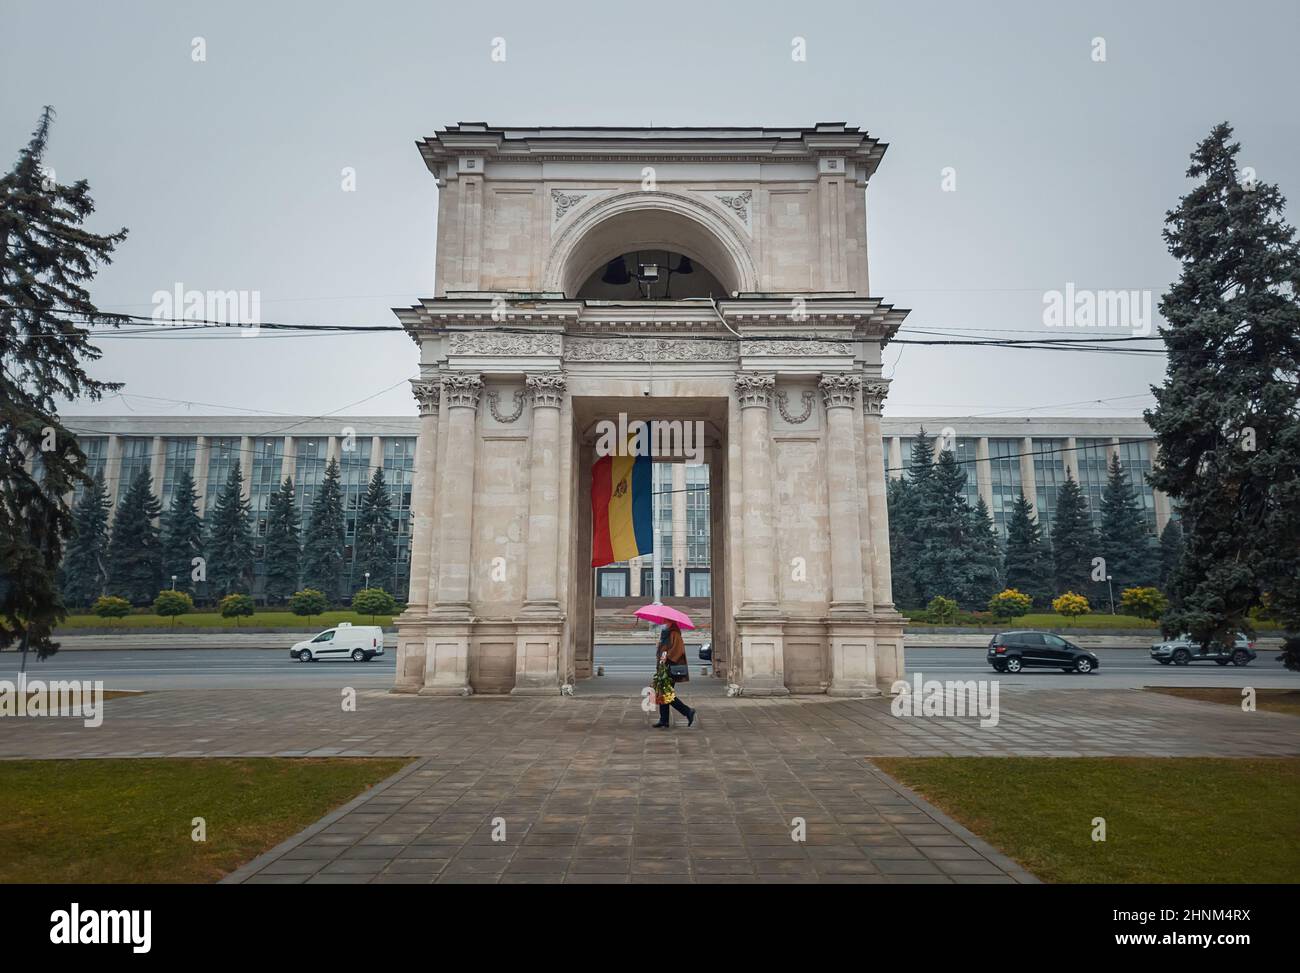 Arche triomphale devant le bâtiment du gouvernement, Chisinau, Moldova. Monuments historiques de la capitale. Banque D'Images